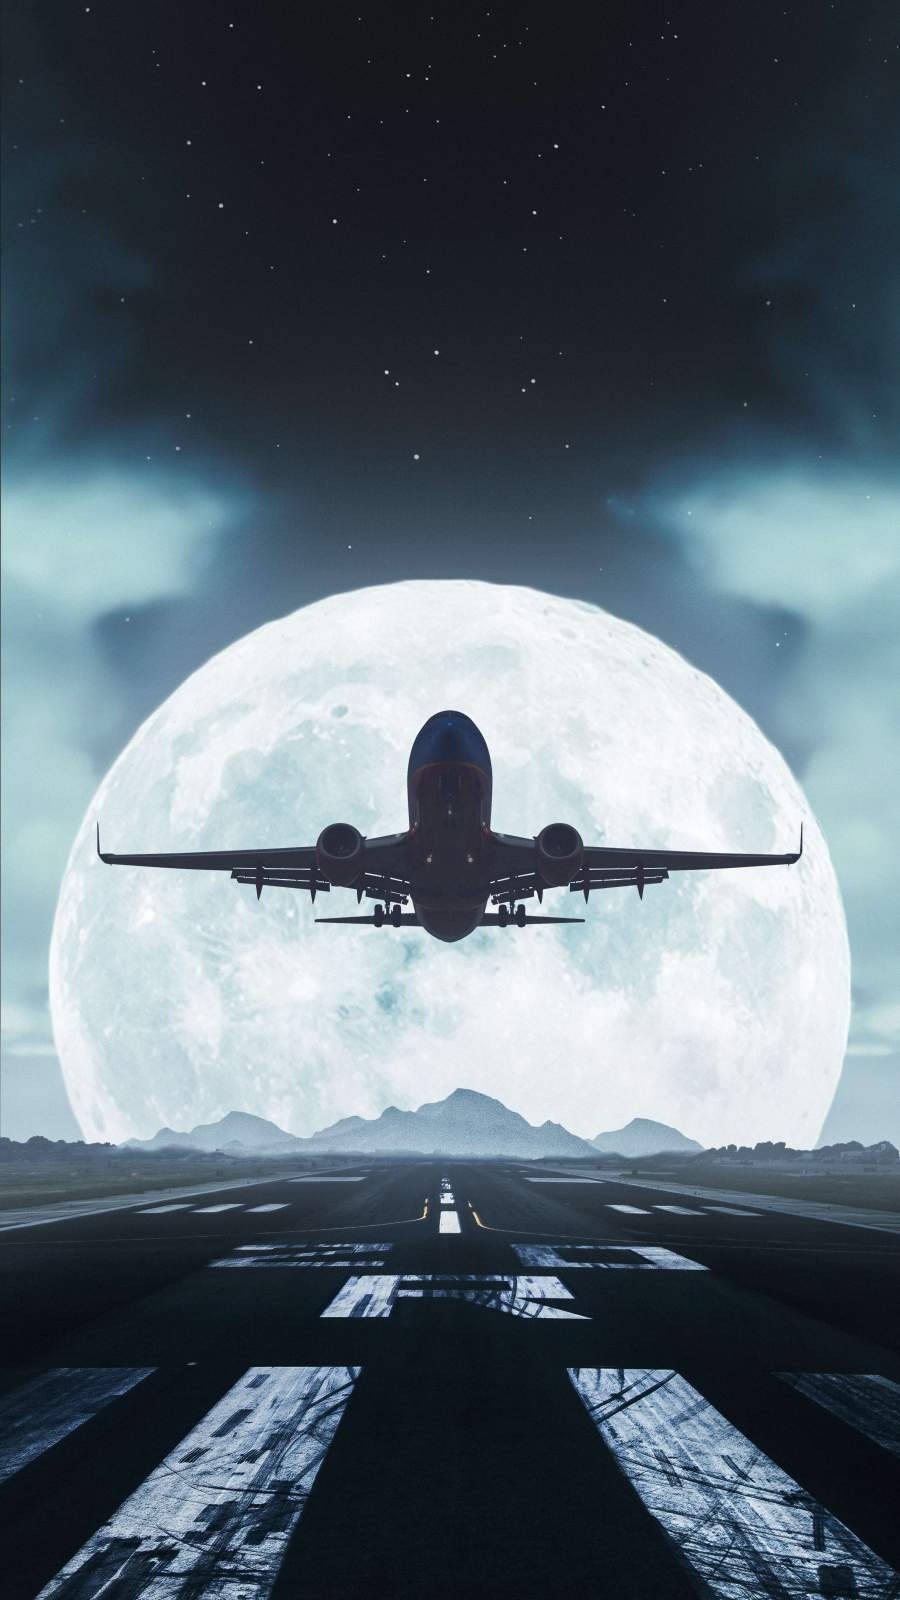 Avióngran Luna. Fondo de pantalla